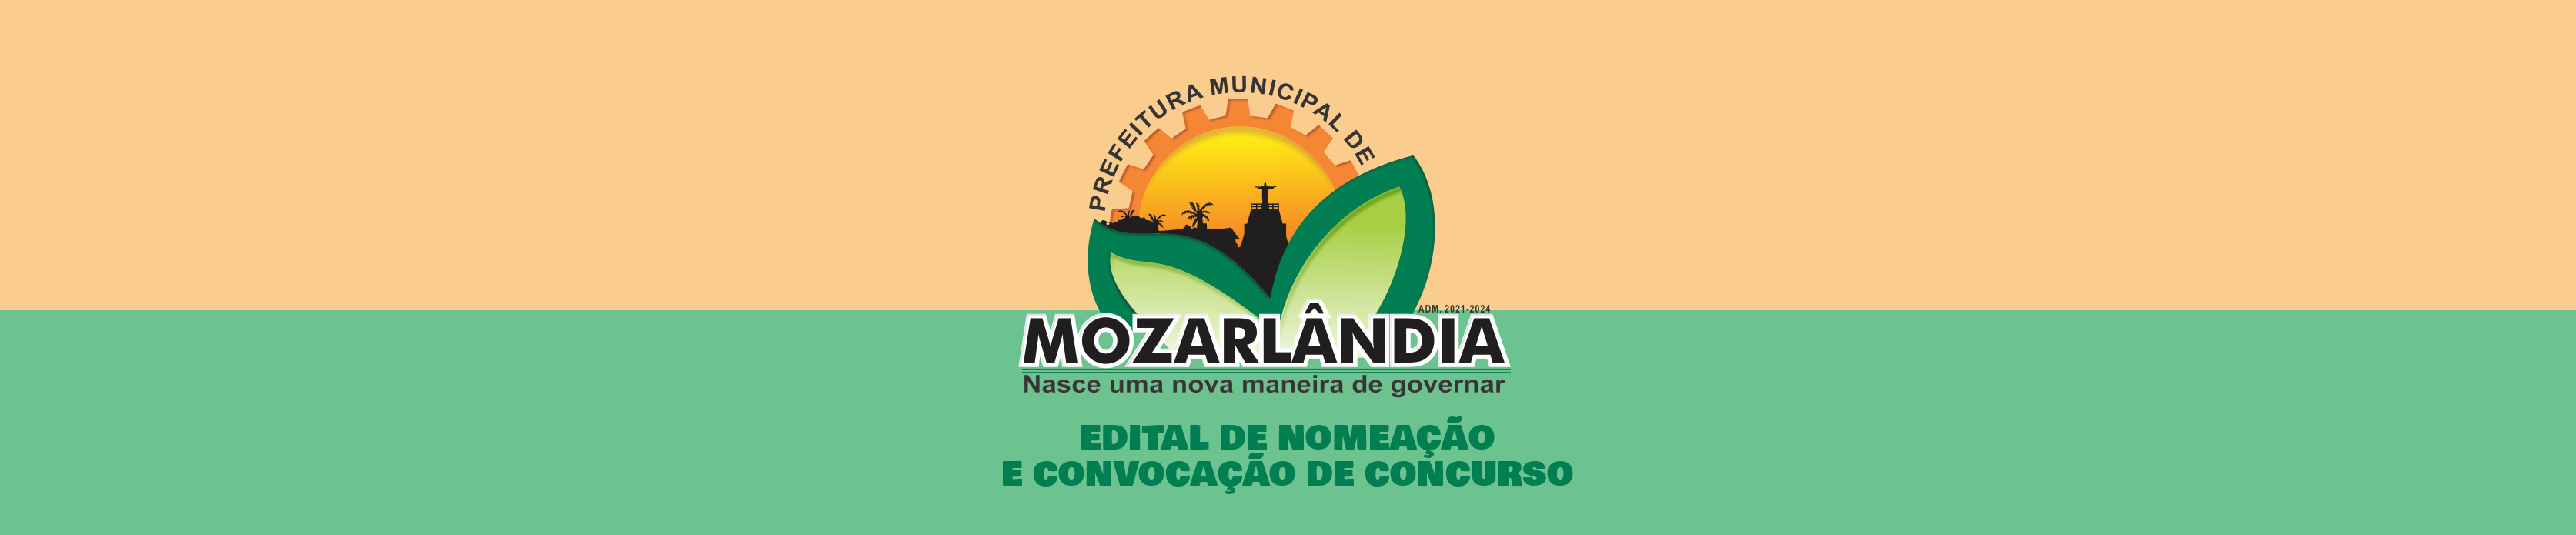 EDITAL DE NOMEAÇÃO E CONVOCAÇÃO DE CONCURSO PÚBLICO Nº001-2015